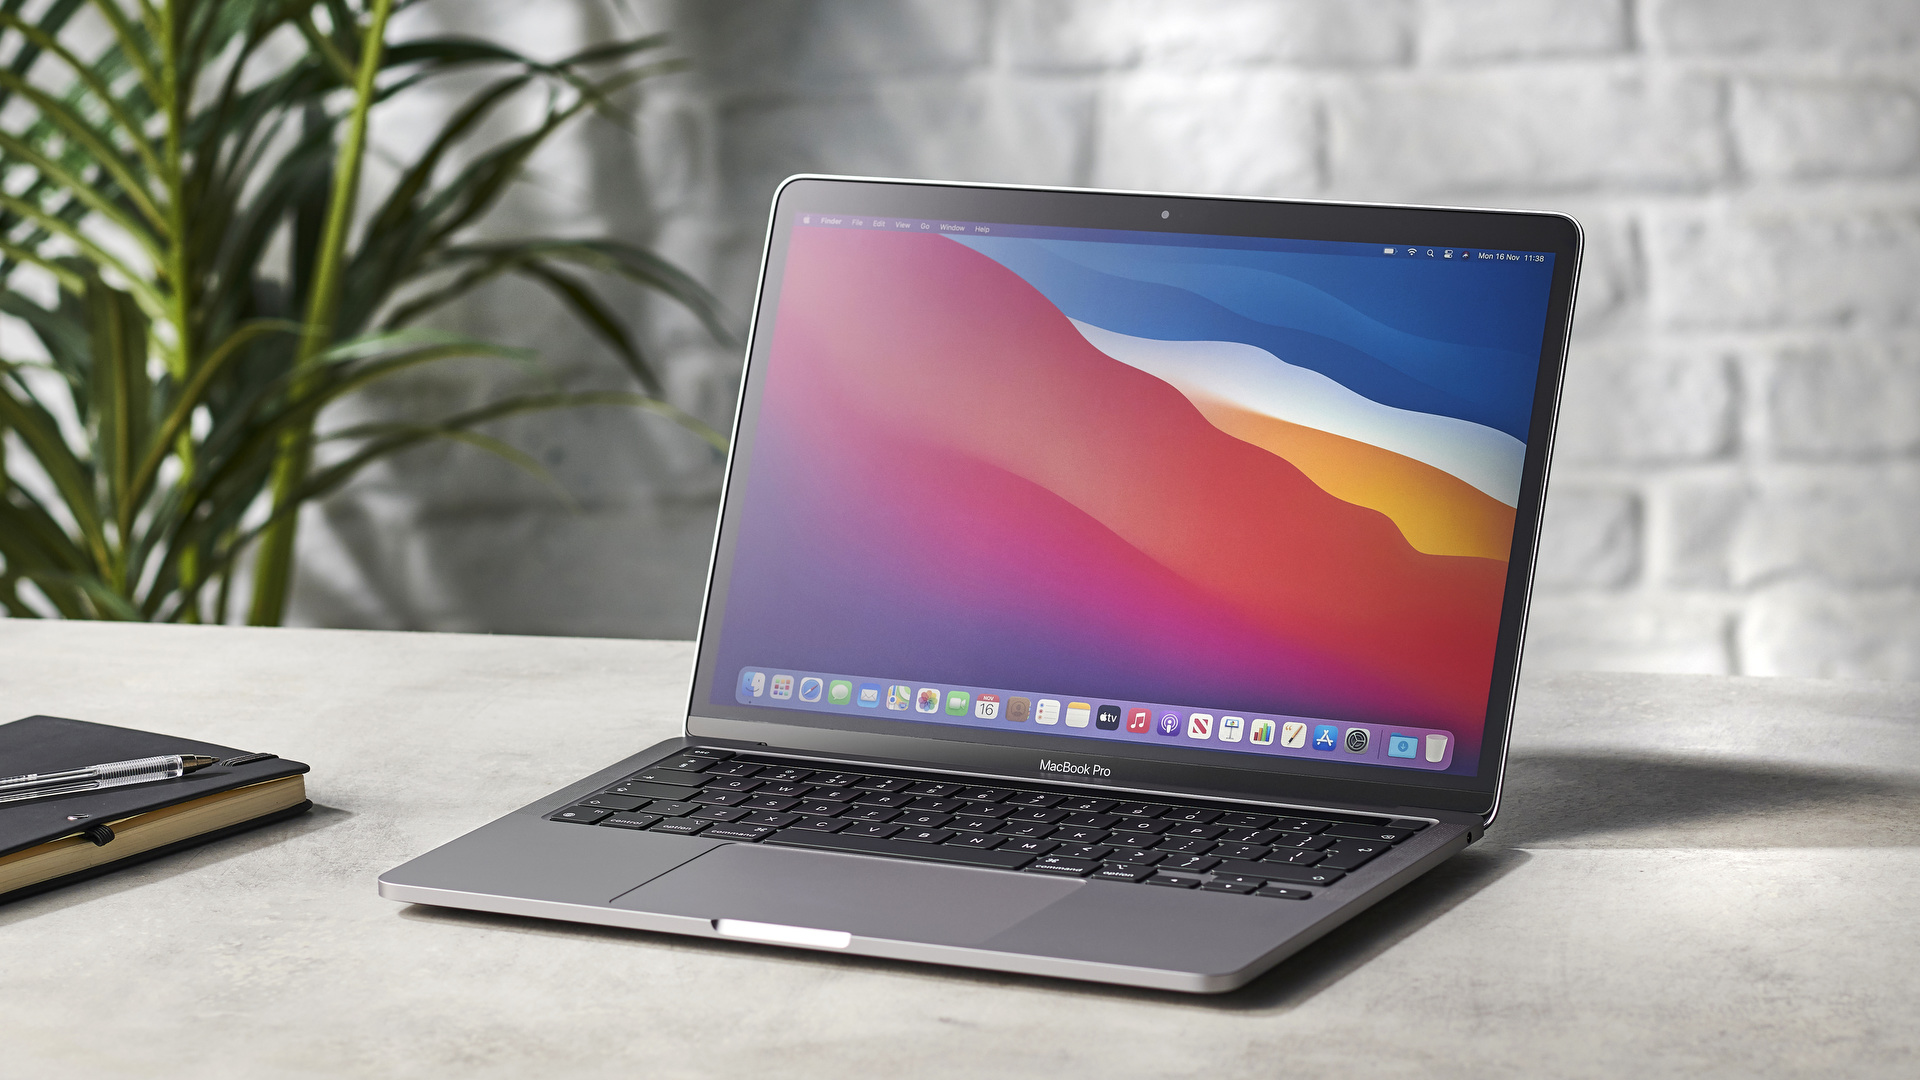 MacBook Pro M1 mới gọn nhẹ và đẹp mắt khi đặt trên bàn